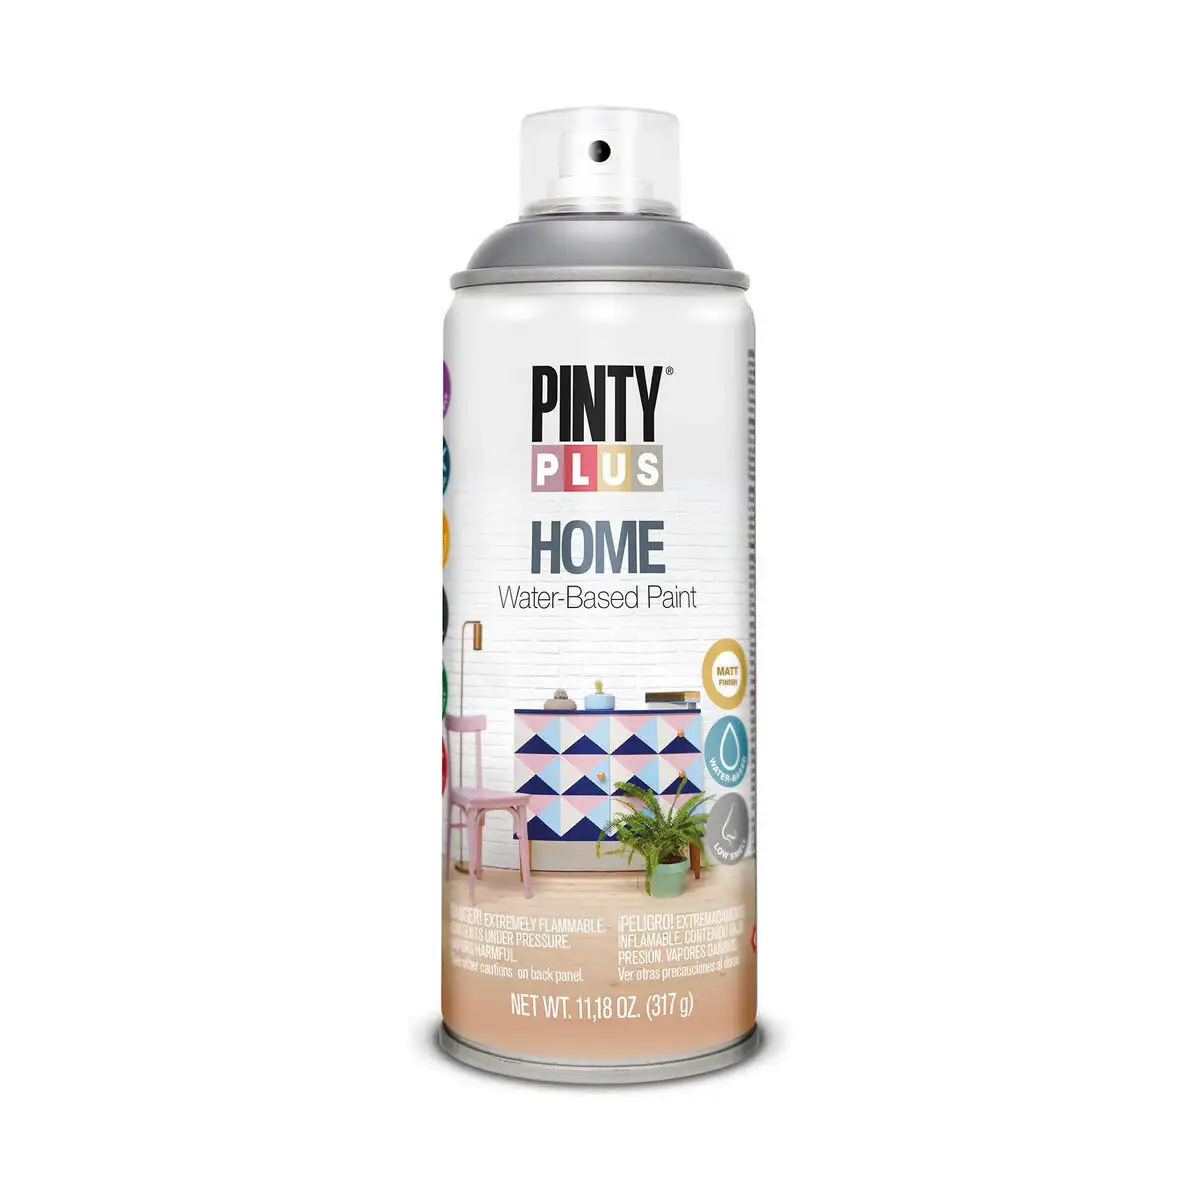 Peinture en spray pintyplus home hm418 400 ml thundercloud grey_9456. DIAYTAR SENEGAL - L'Art de Choisir, l'Art de S'émerveiller. Explorez notre boutique en ligne et choisissez des articles qui éveillent votre sens de l'émerveillement.